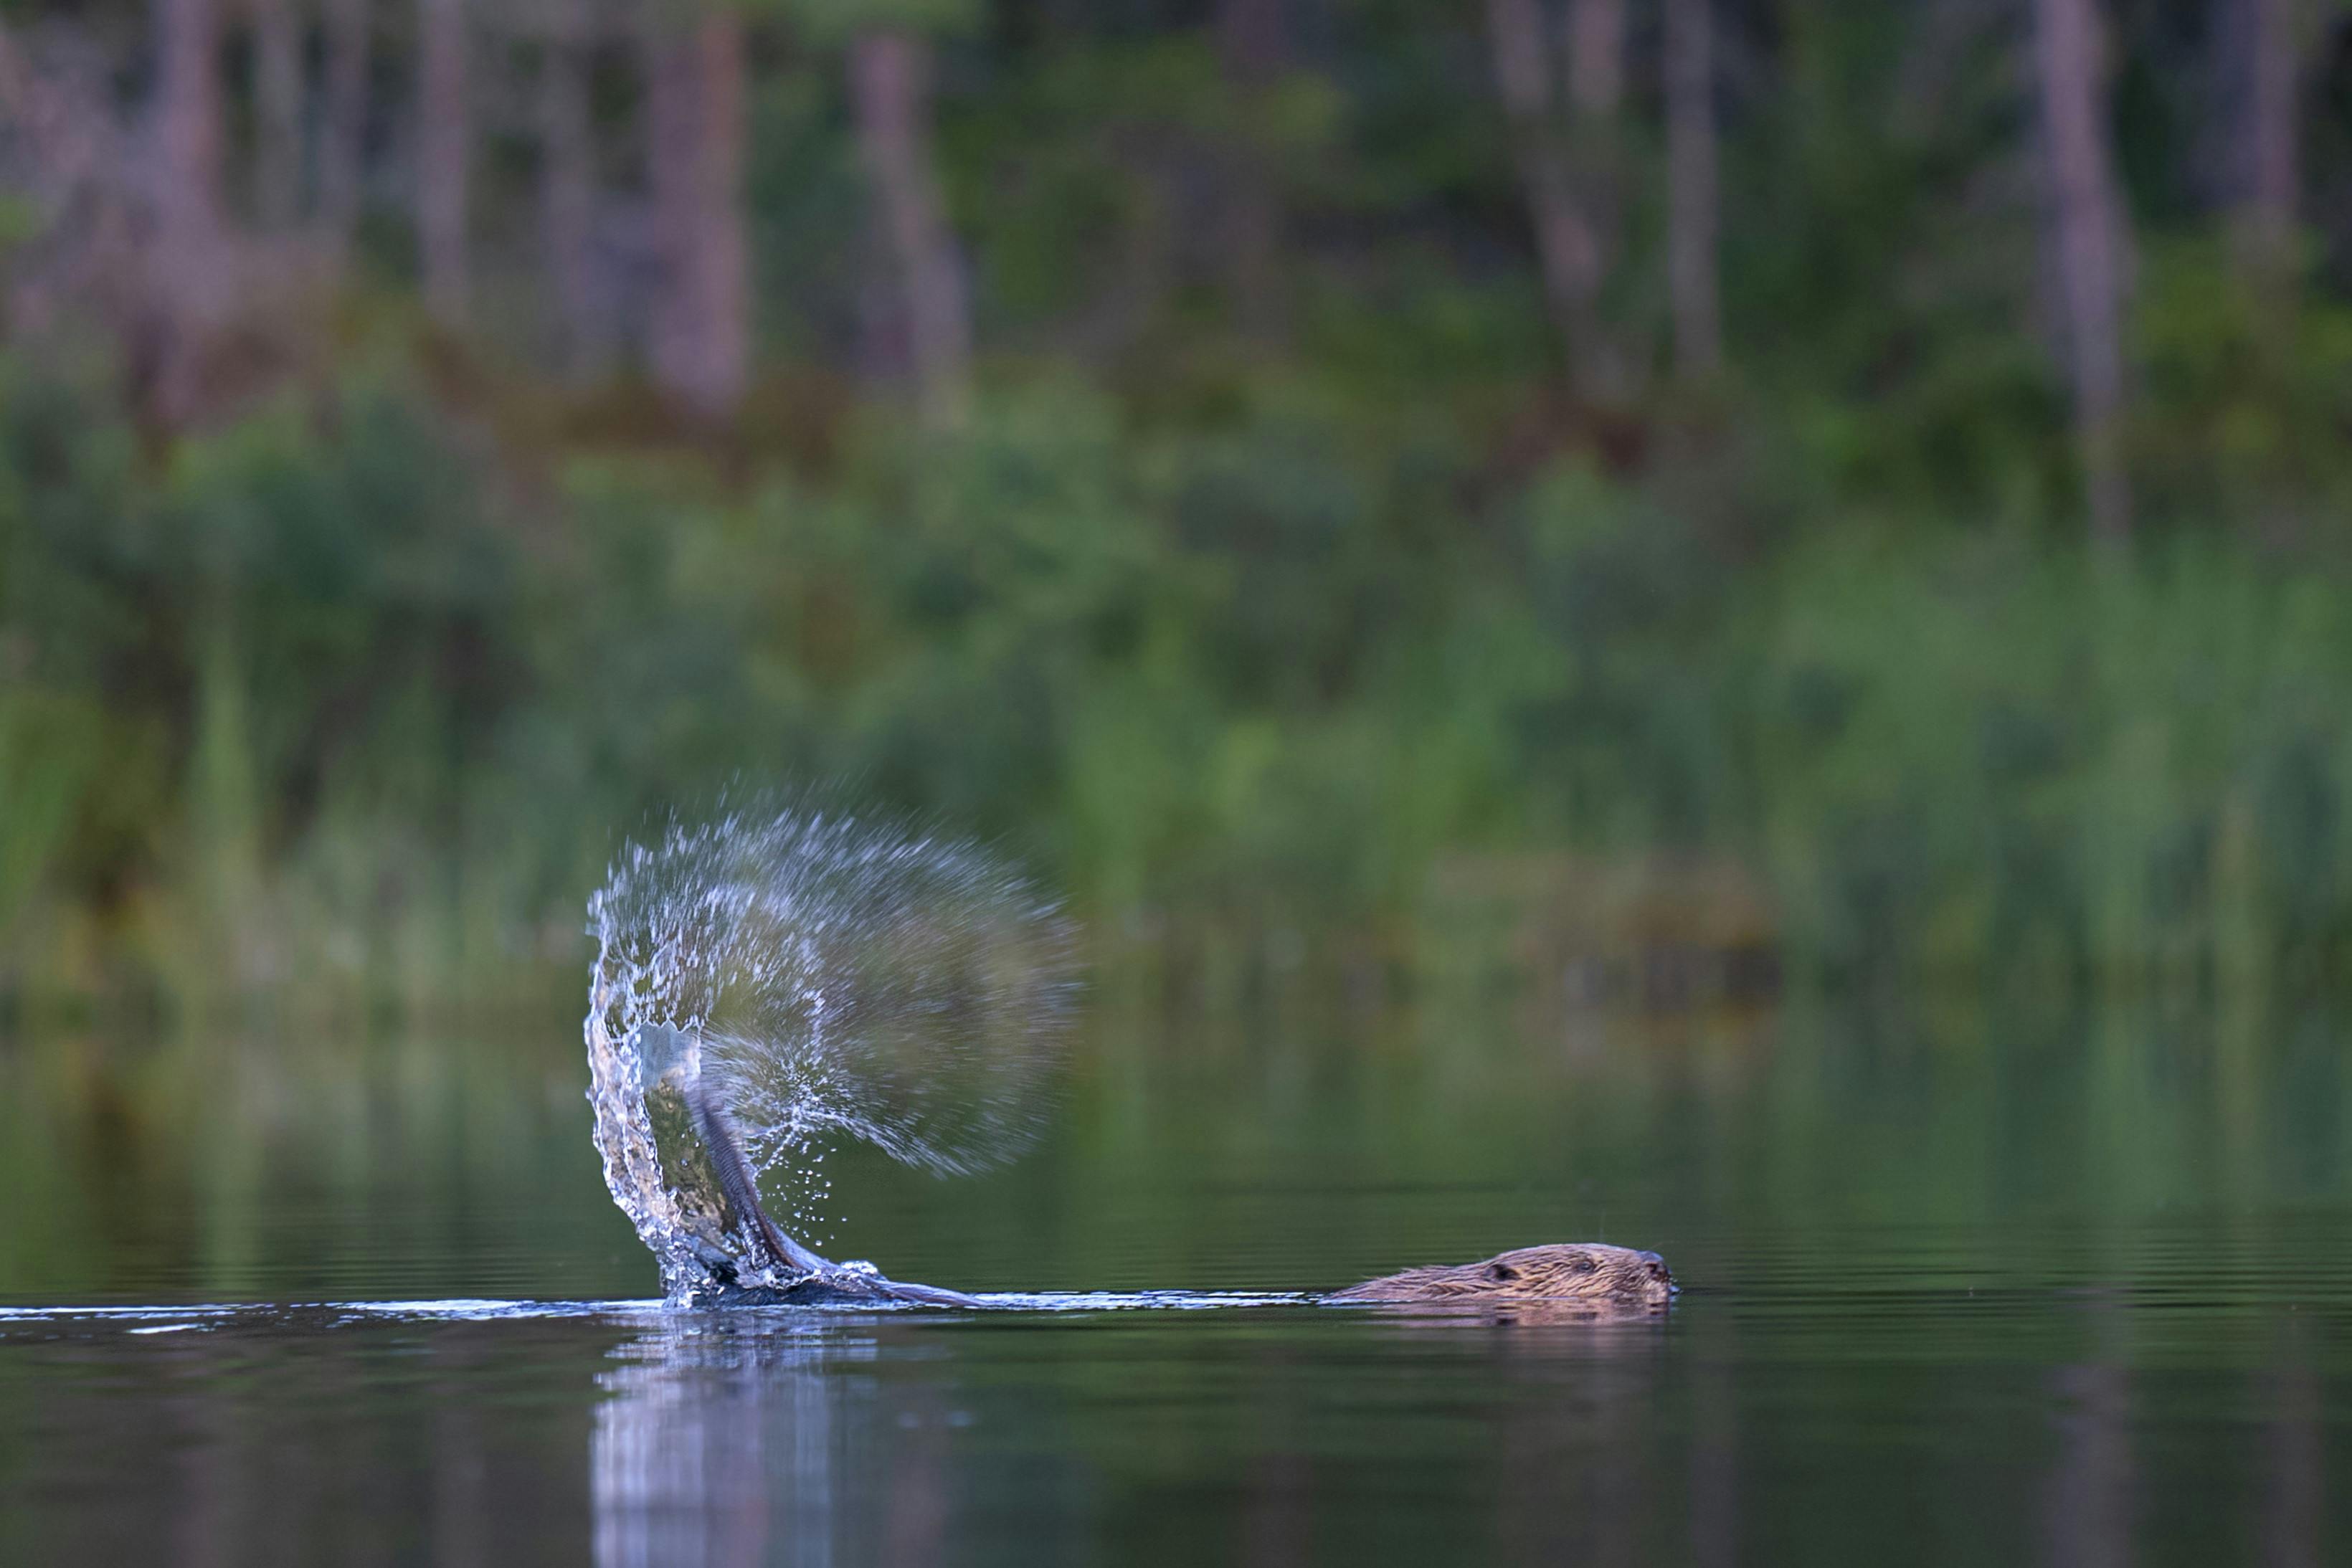 Castor frappant sa queue dans la surface de l'eau envoyant des gouttelettes dans l'air, photographié lors d'un safari castor en Suède par Nordic Discovery.